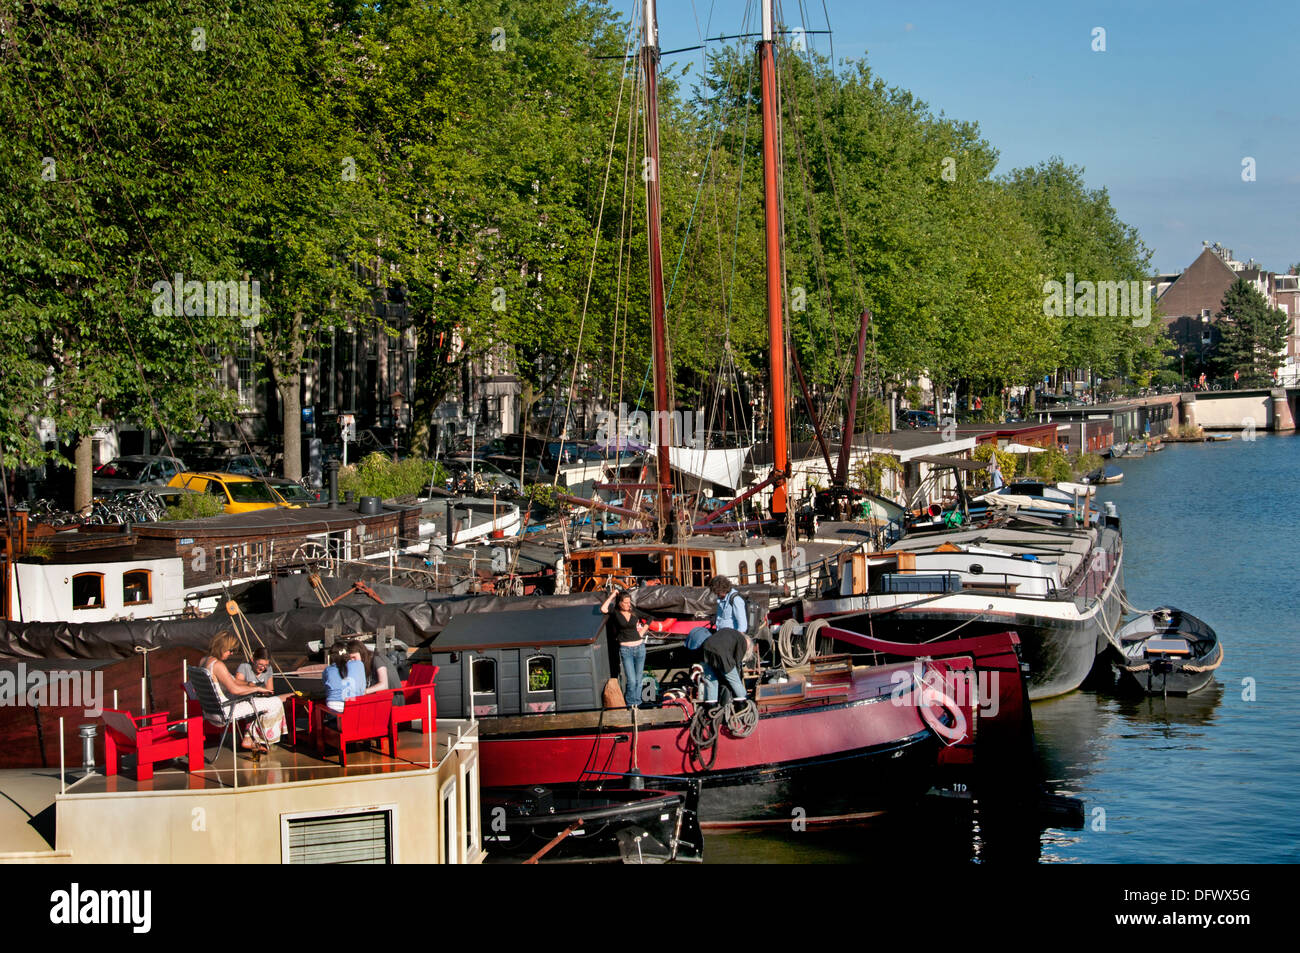 Péniche avec terrasse extérieure Amsterdam Pays-Bas Waalseilandsgracht Vin Banque D'Images